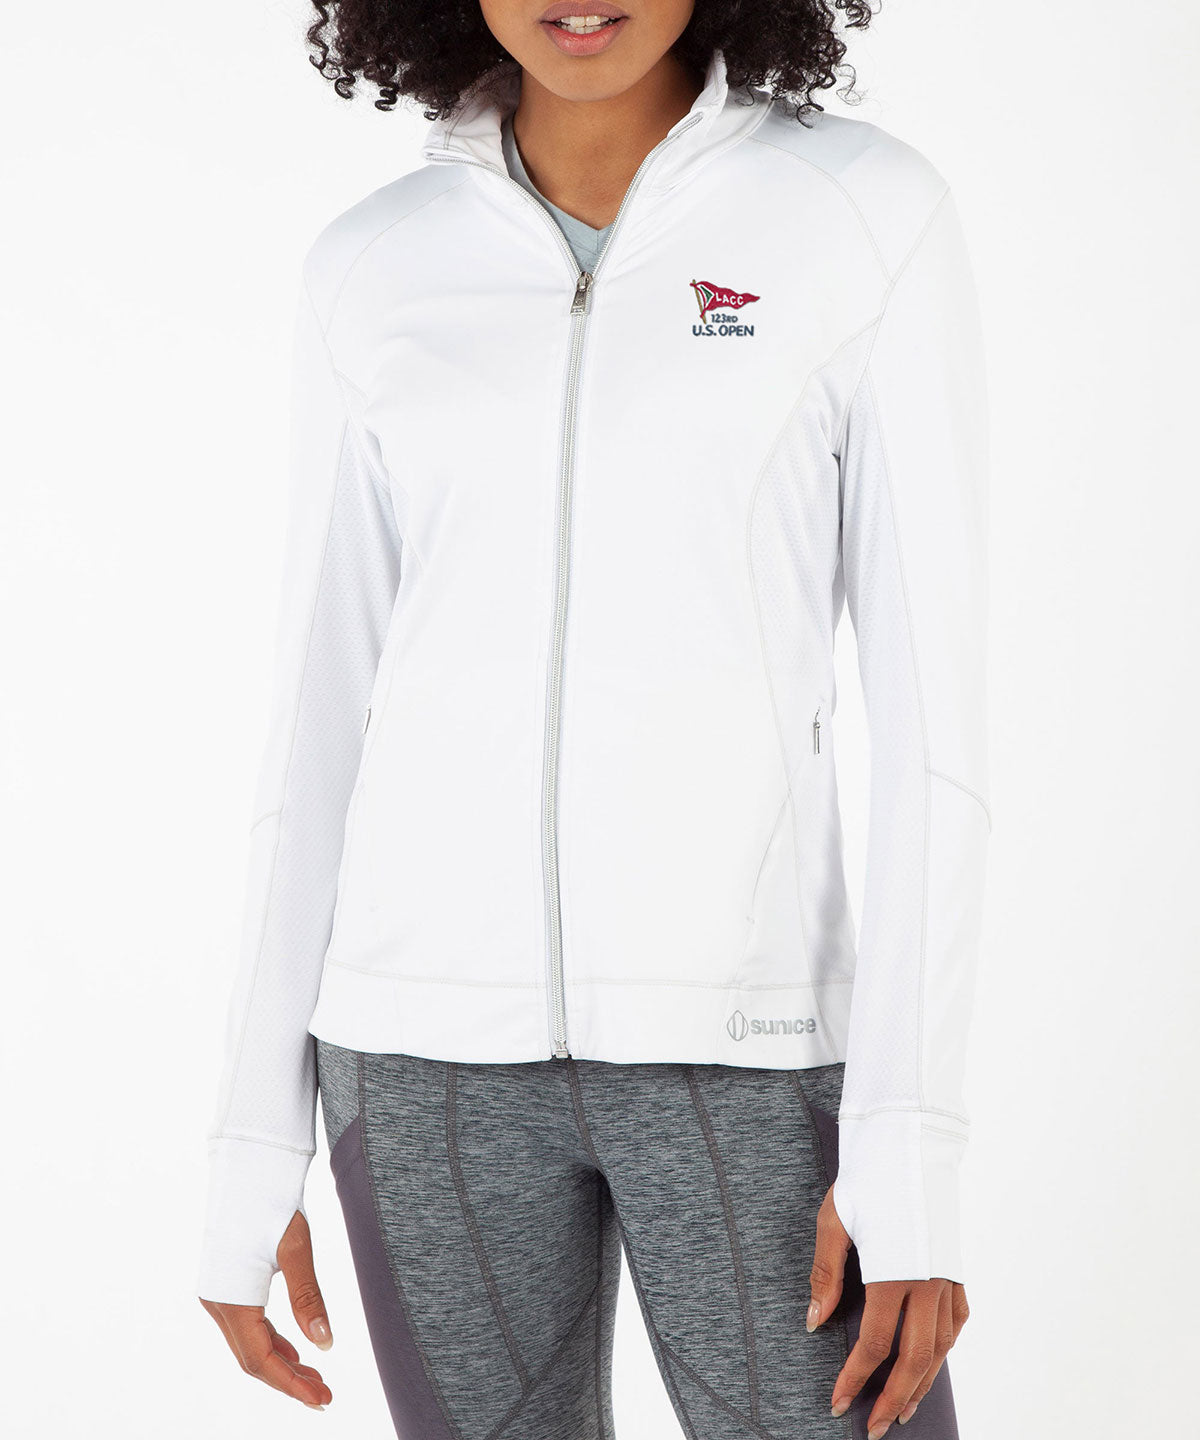 123rd U.S. Open Sunice Women's Elena Ultralight Stretch Jacket